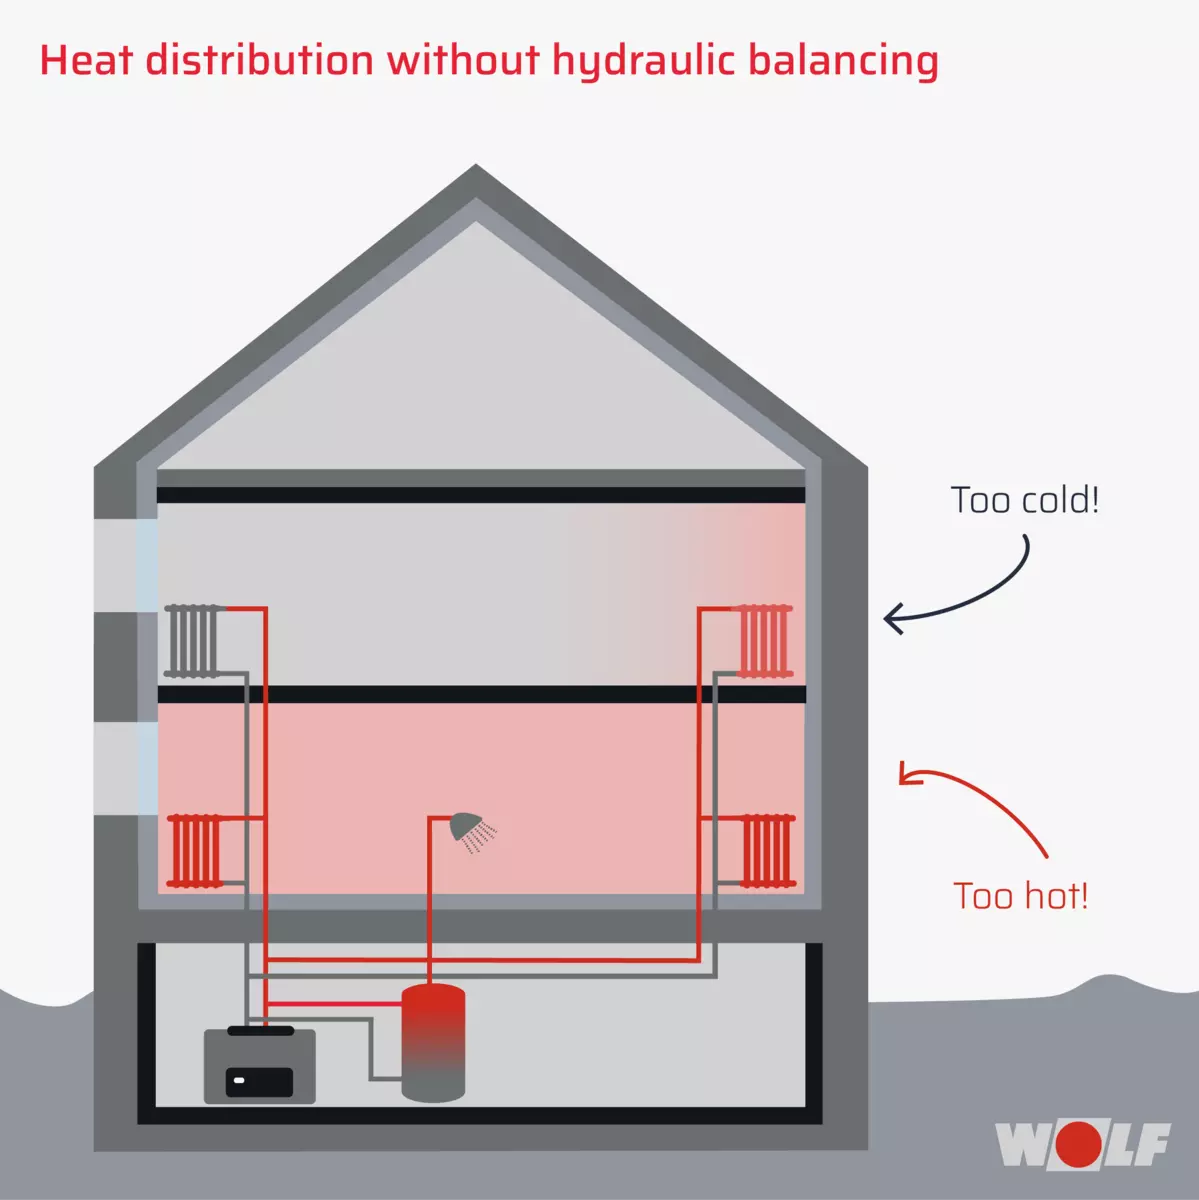 Heat distribution without hydraulic balancing